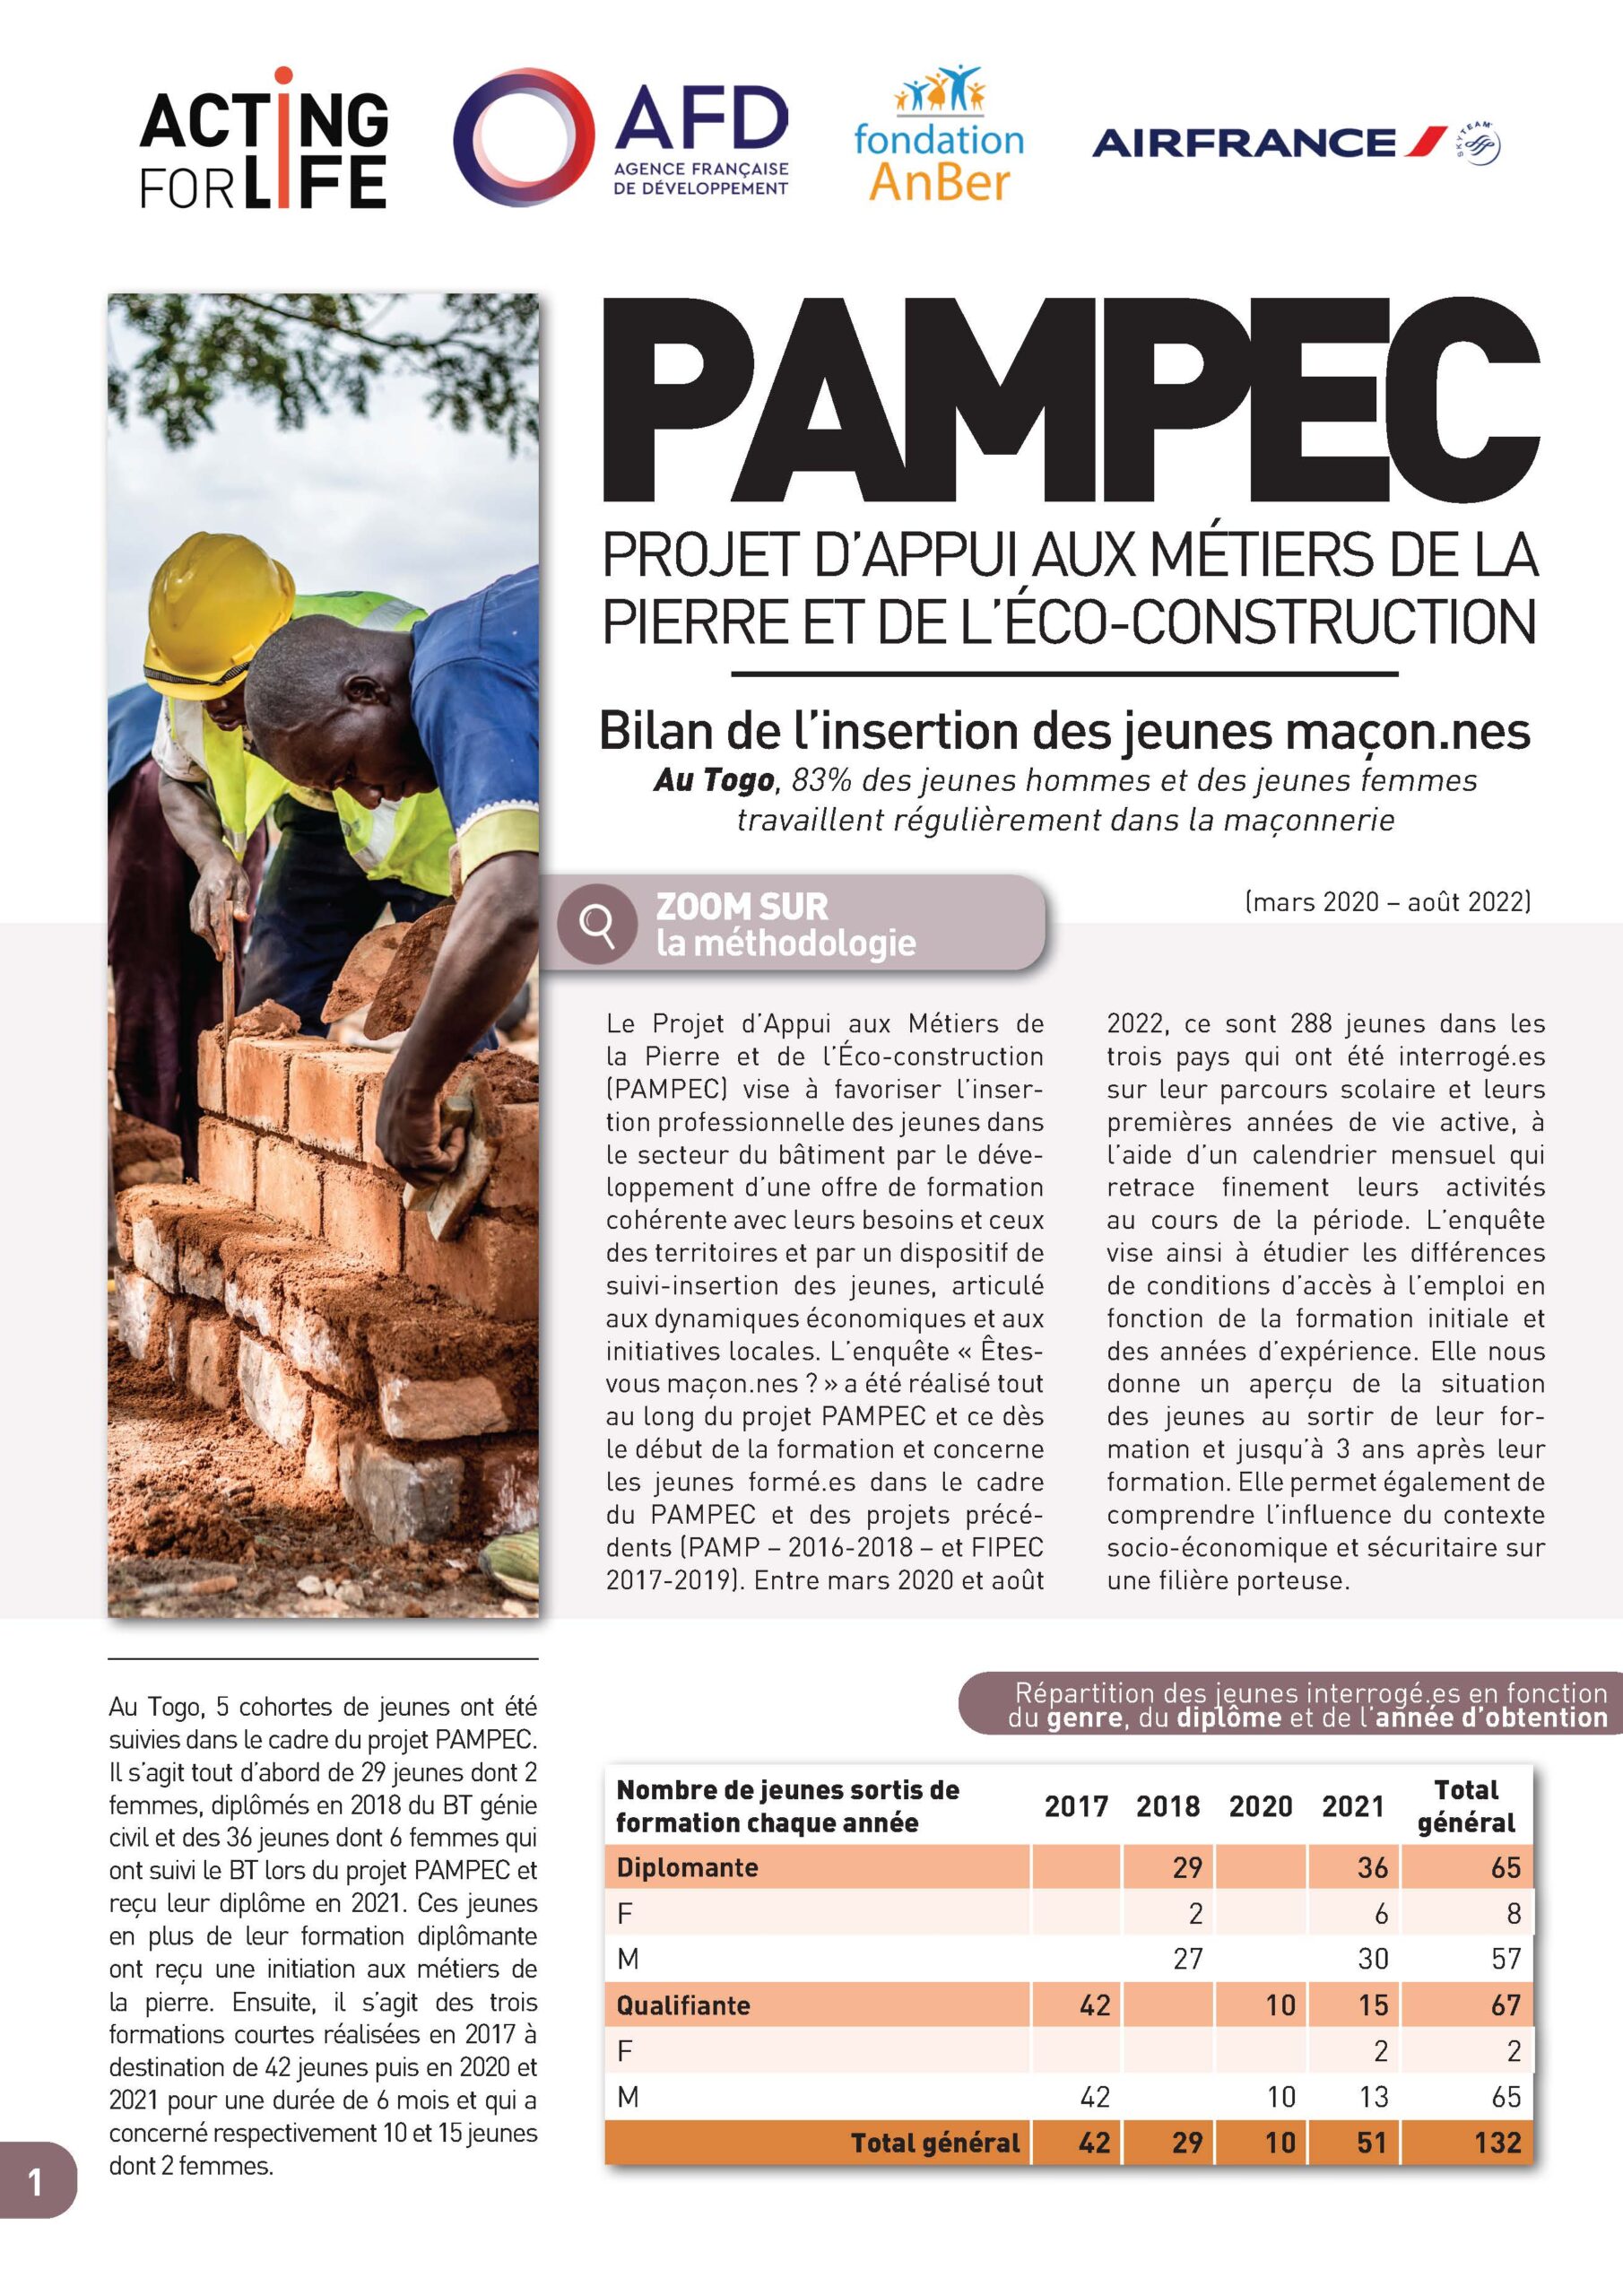 Insertion professionnelle des jeunes PAMPEC au Togo